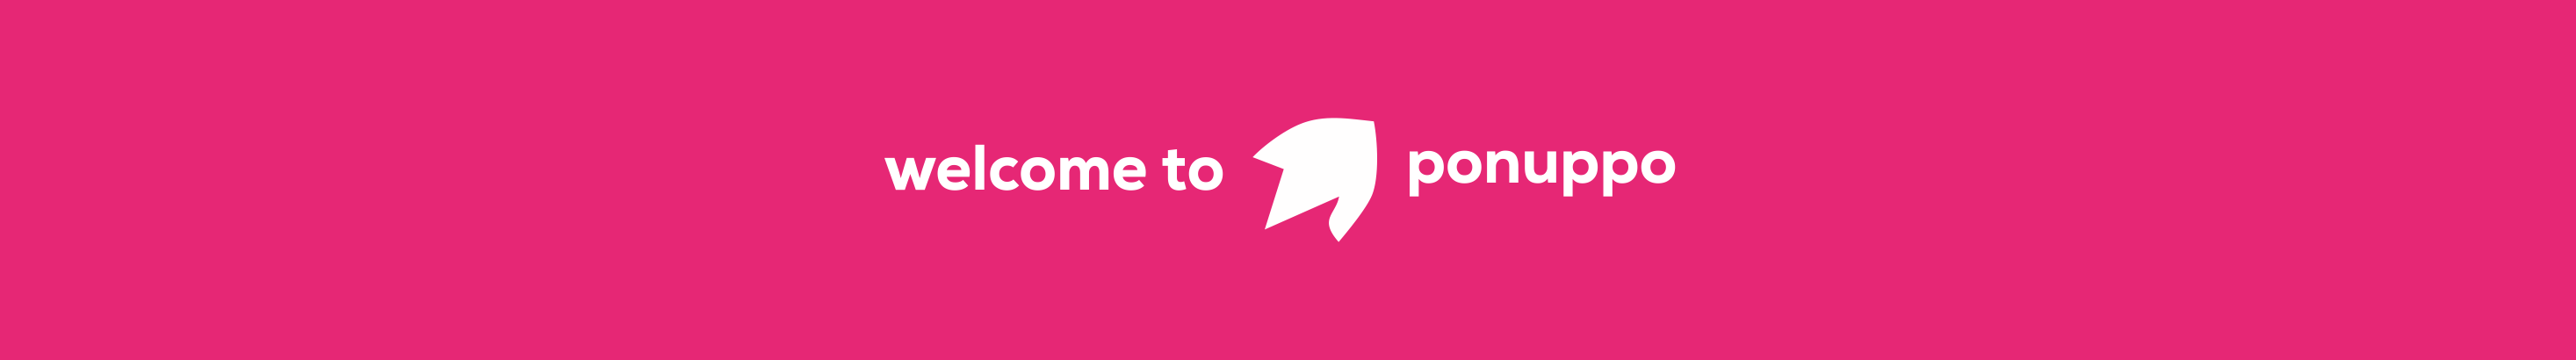 ponuppo po's profile banner